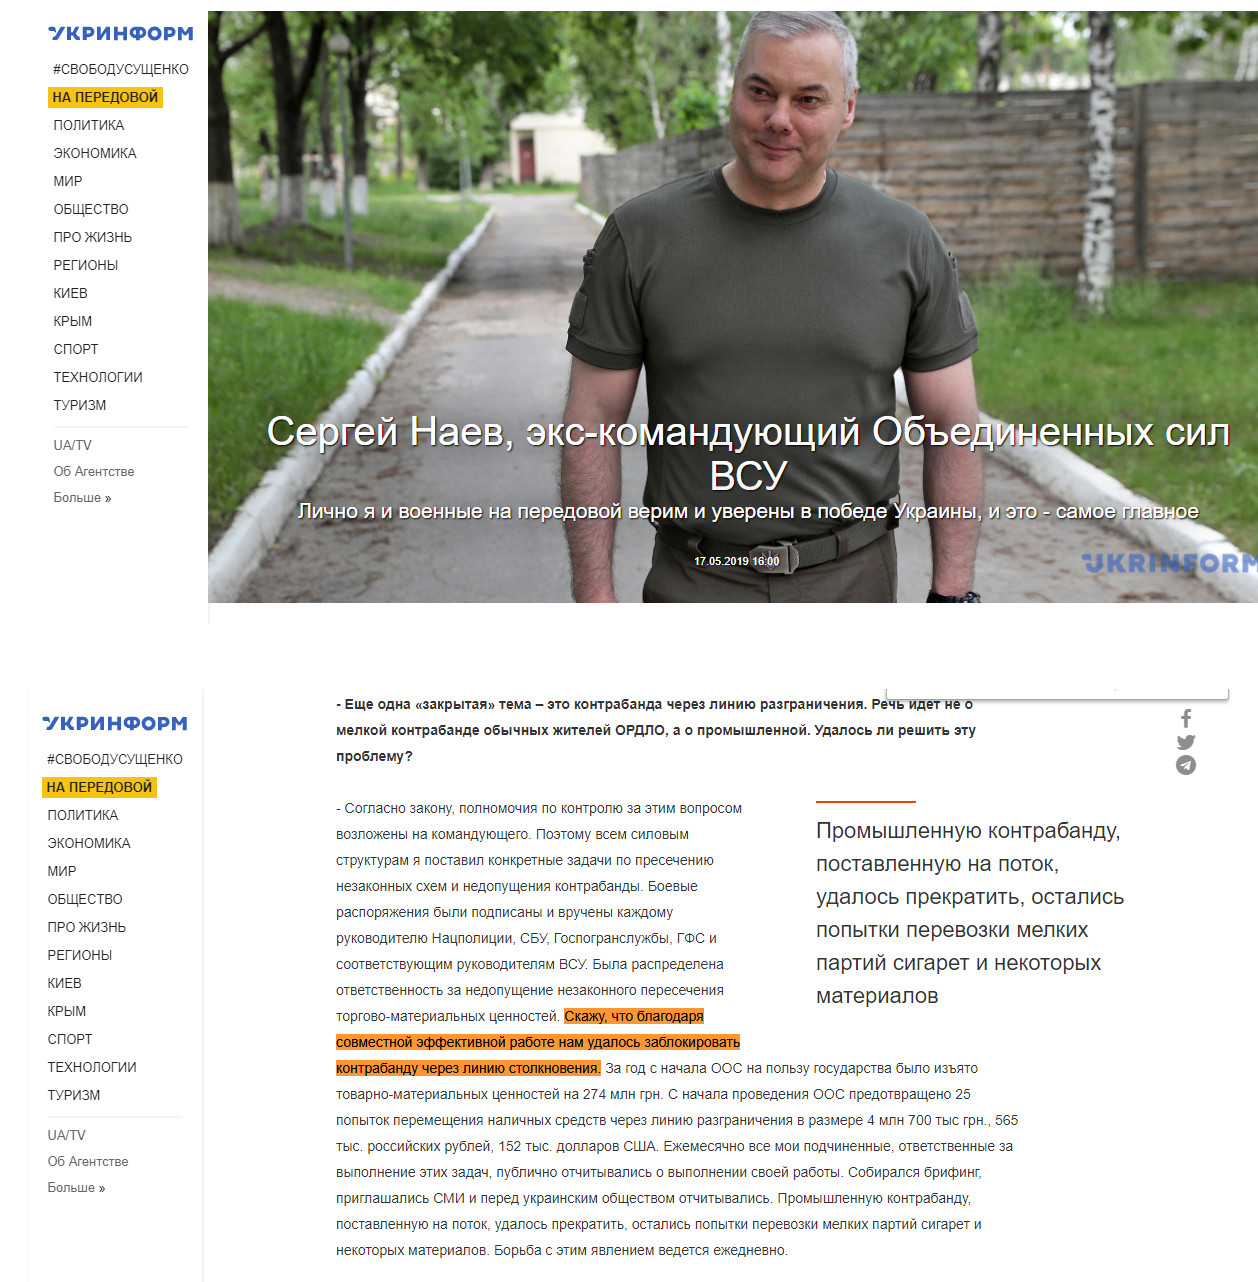 https://www.ukrinform.ru/rubric-ato/2702430-sergej-naev-ekskomanduusij-obedinennogo-operativnogo-staba-vsu.html